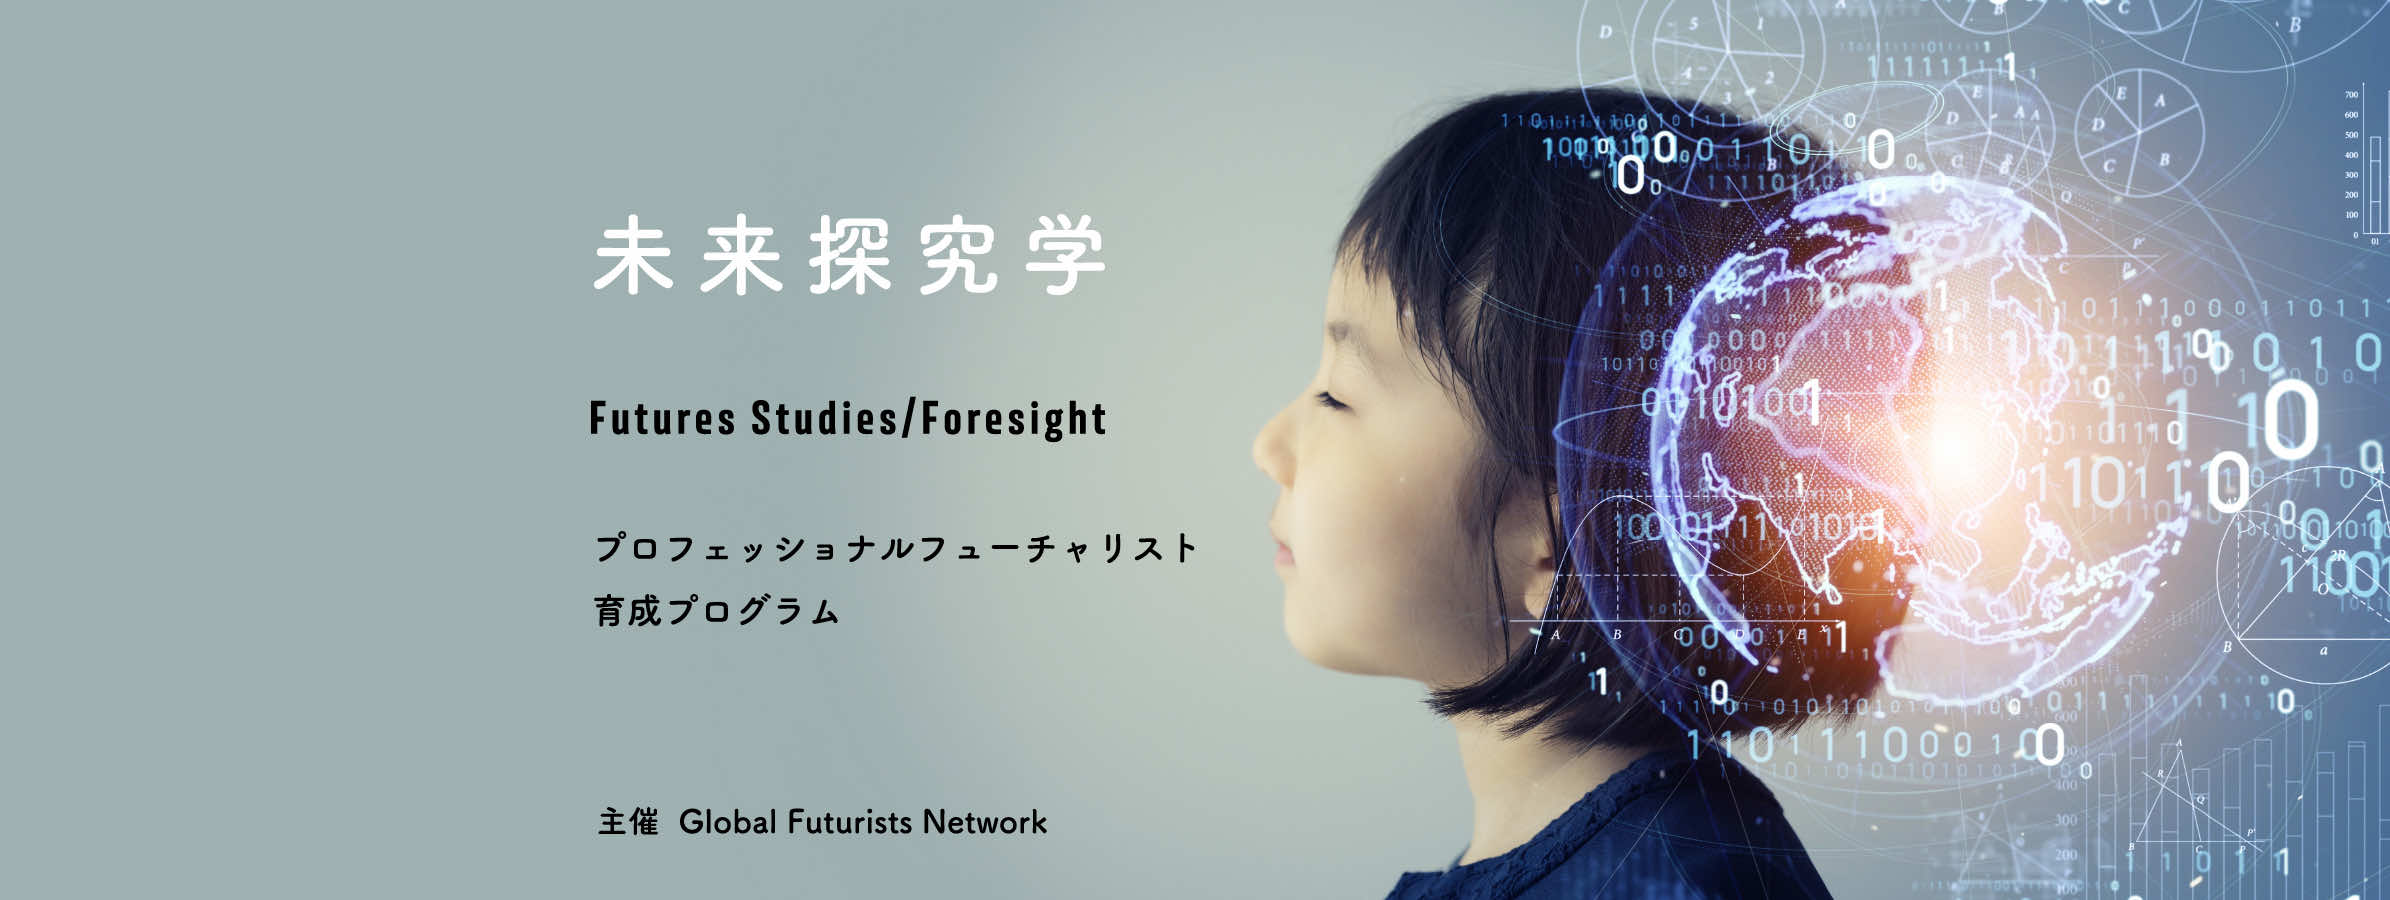 未来探求学 Futures Studies/Foresight プロフェッショナルフューチャリスト 育成プログラム 主催  Global Futurists Network